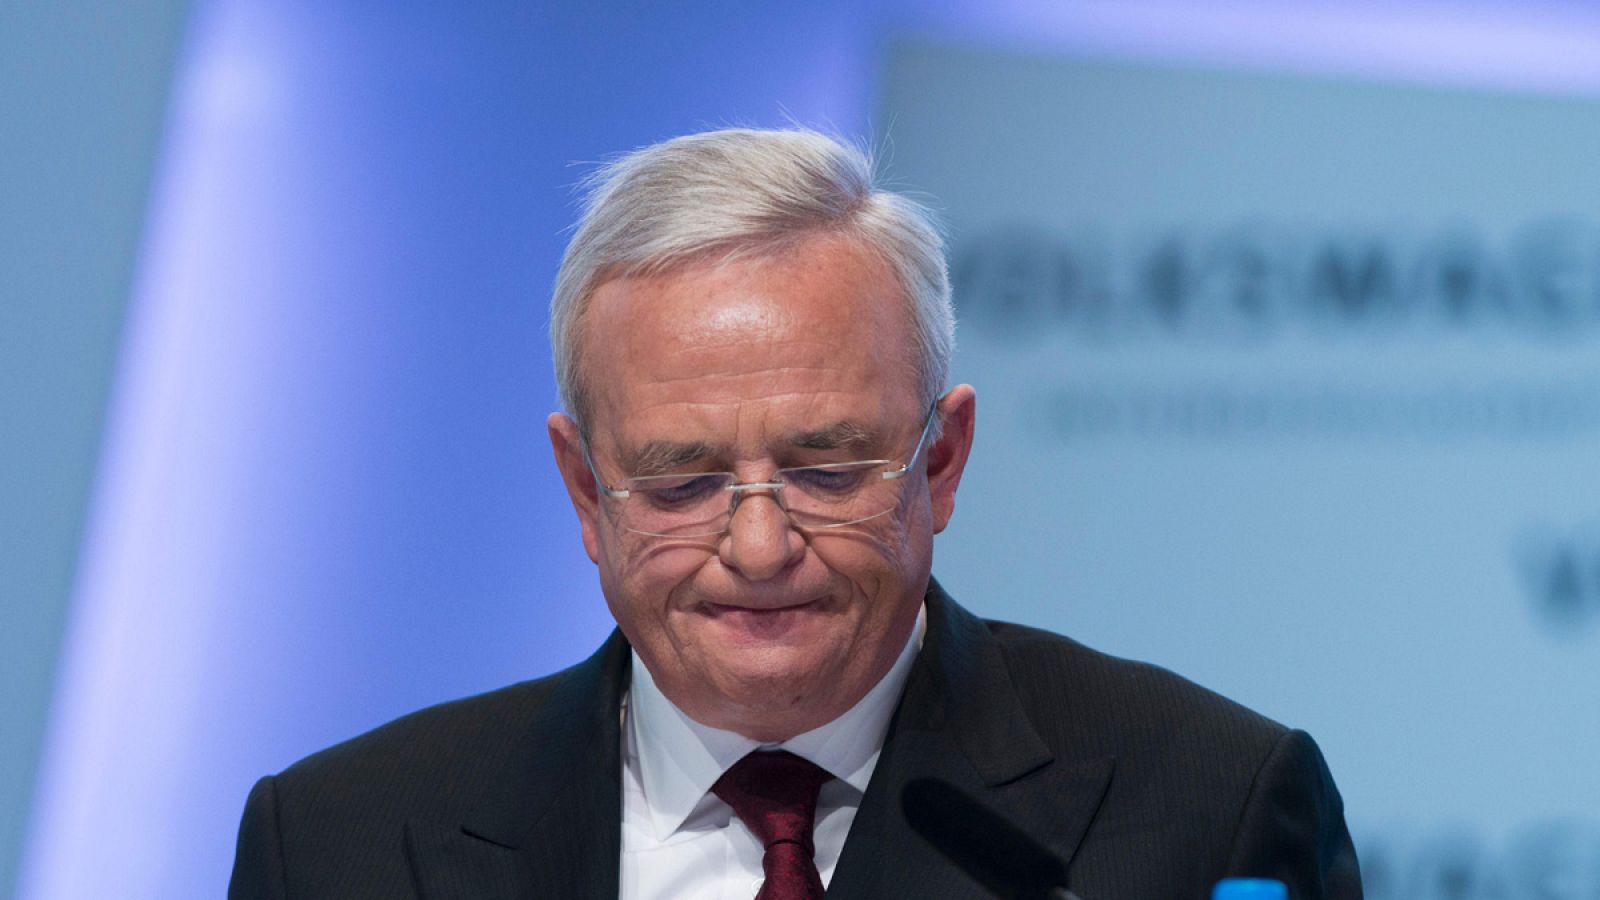 El expresidente de la junta directiva de Volkswagen Martin Winterkorn